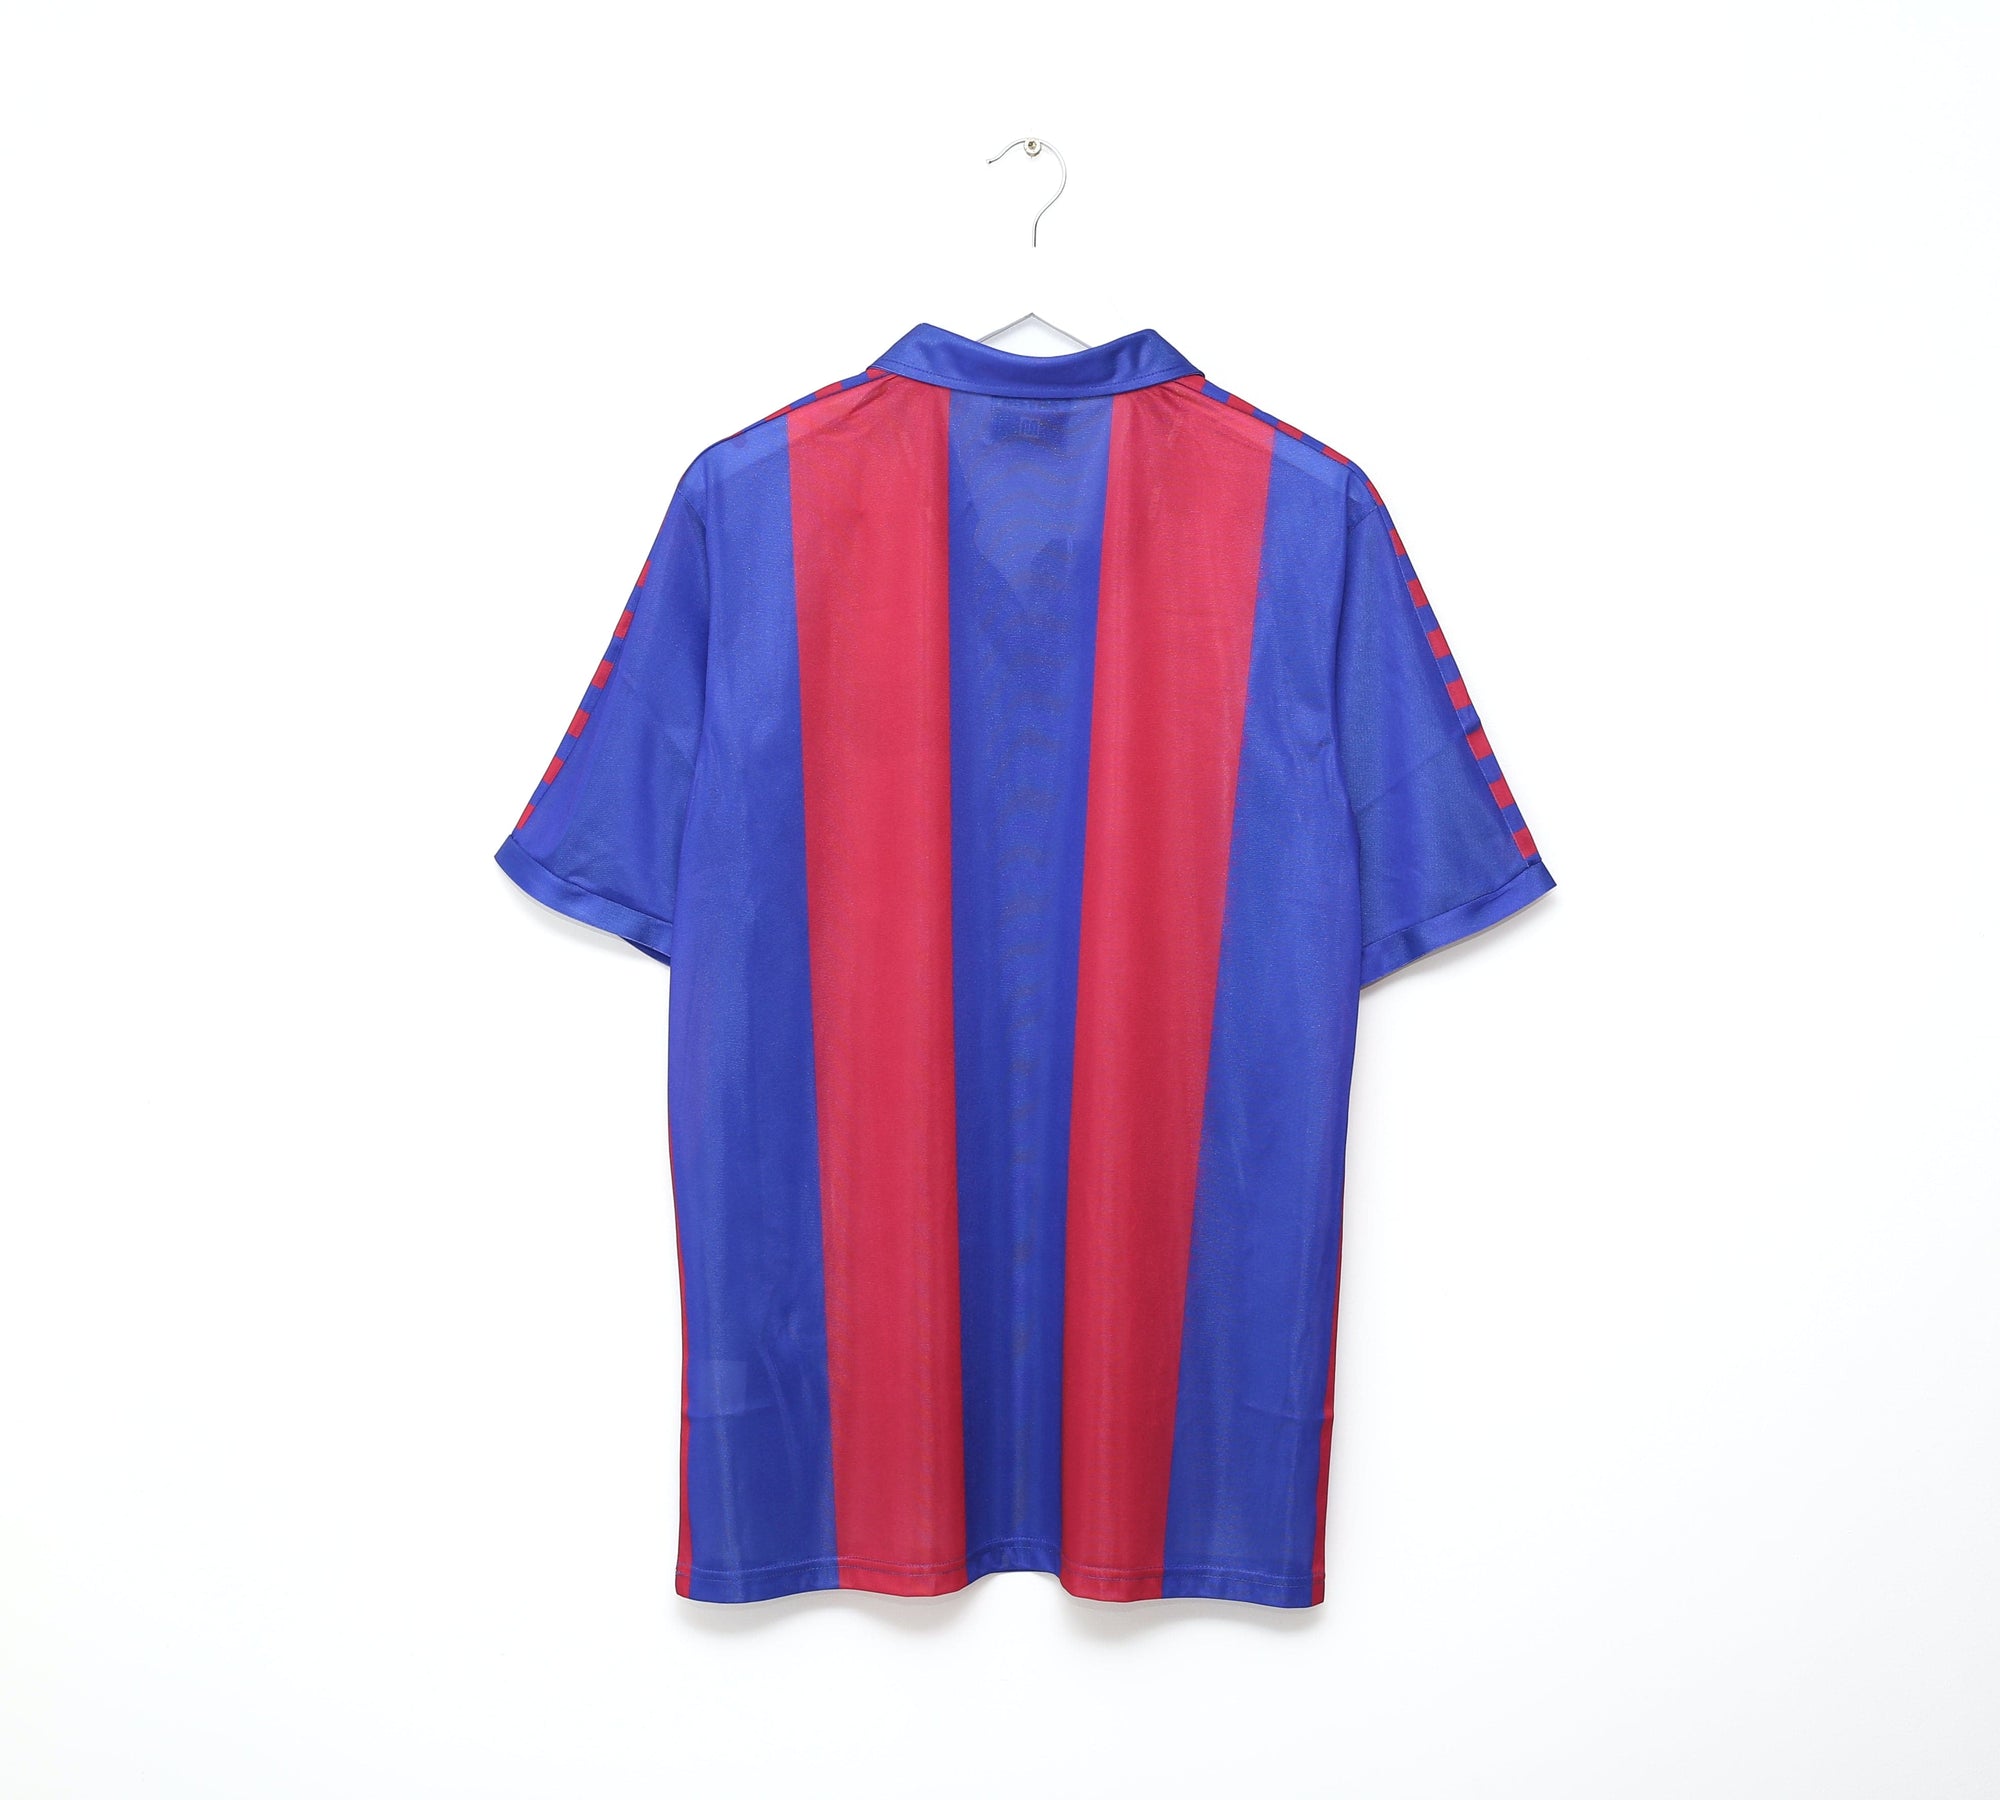 1982-89 Meyba retro Blaugrana home football shirt New